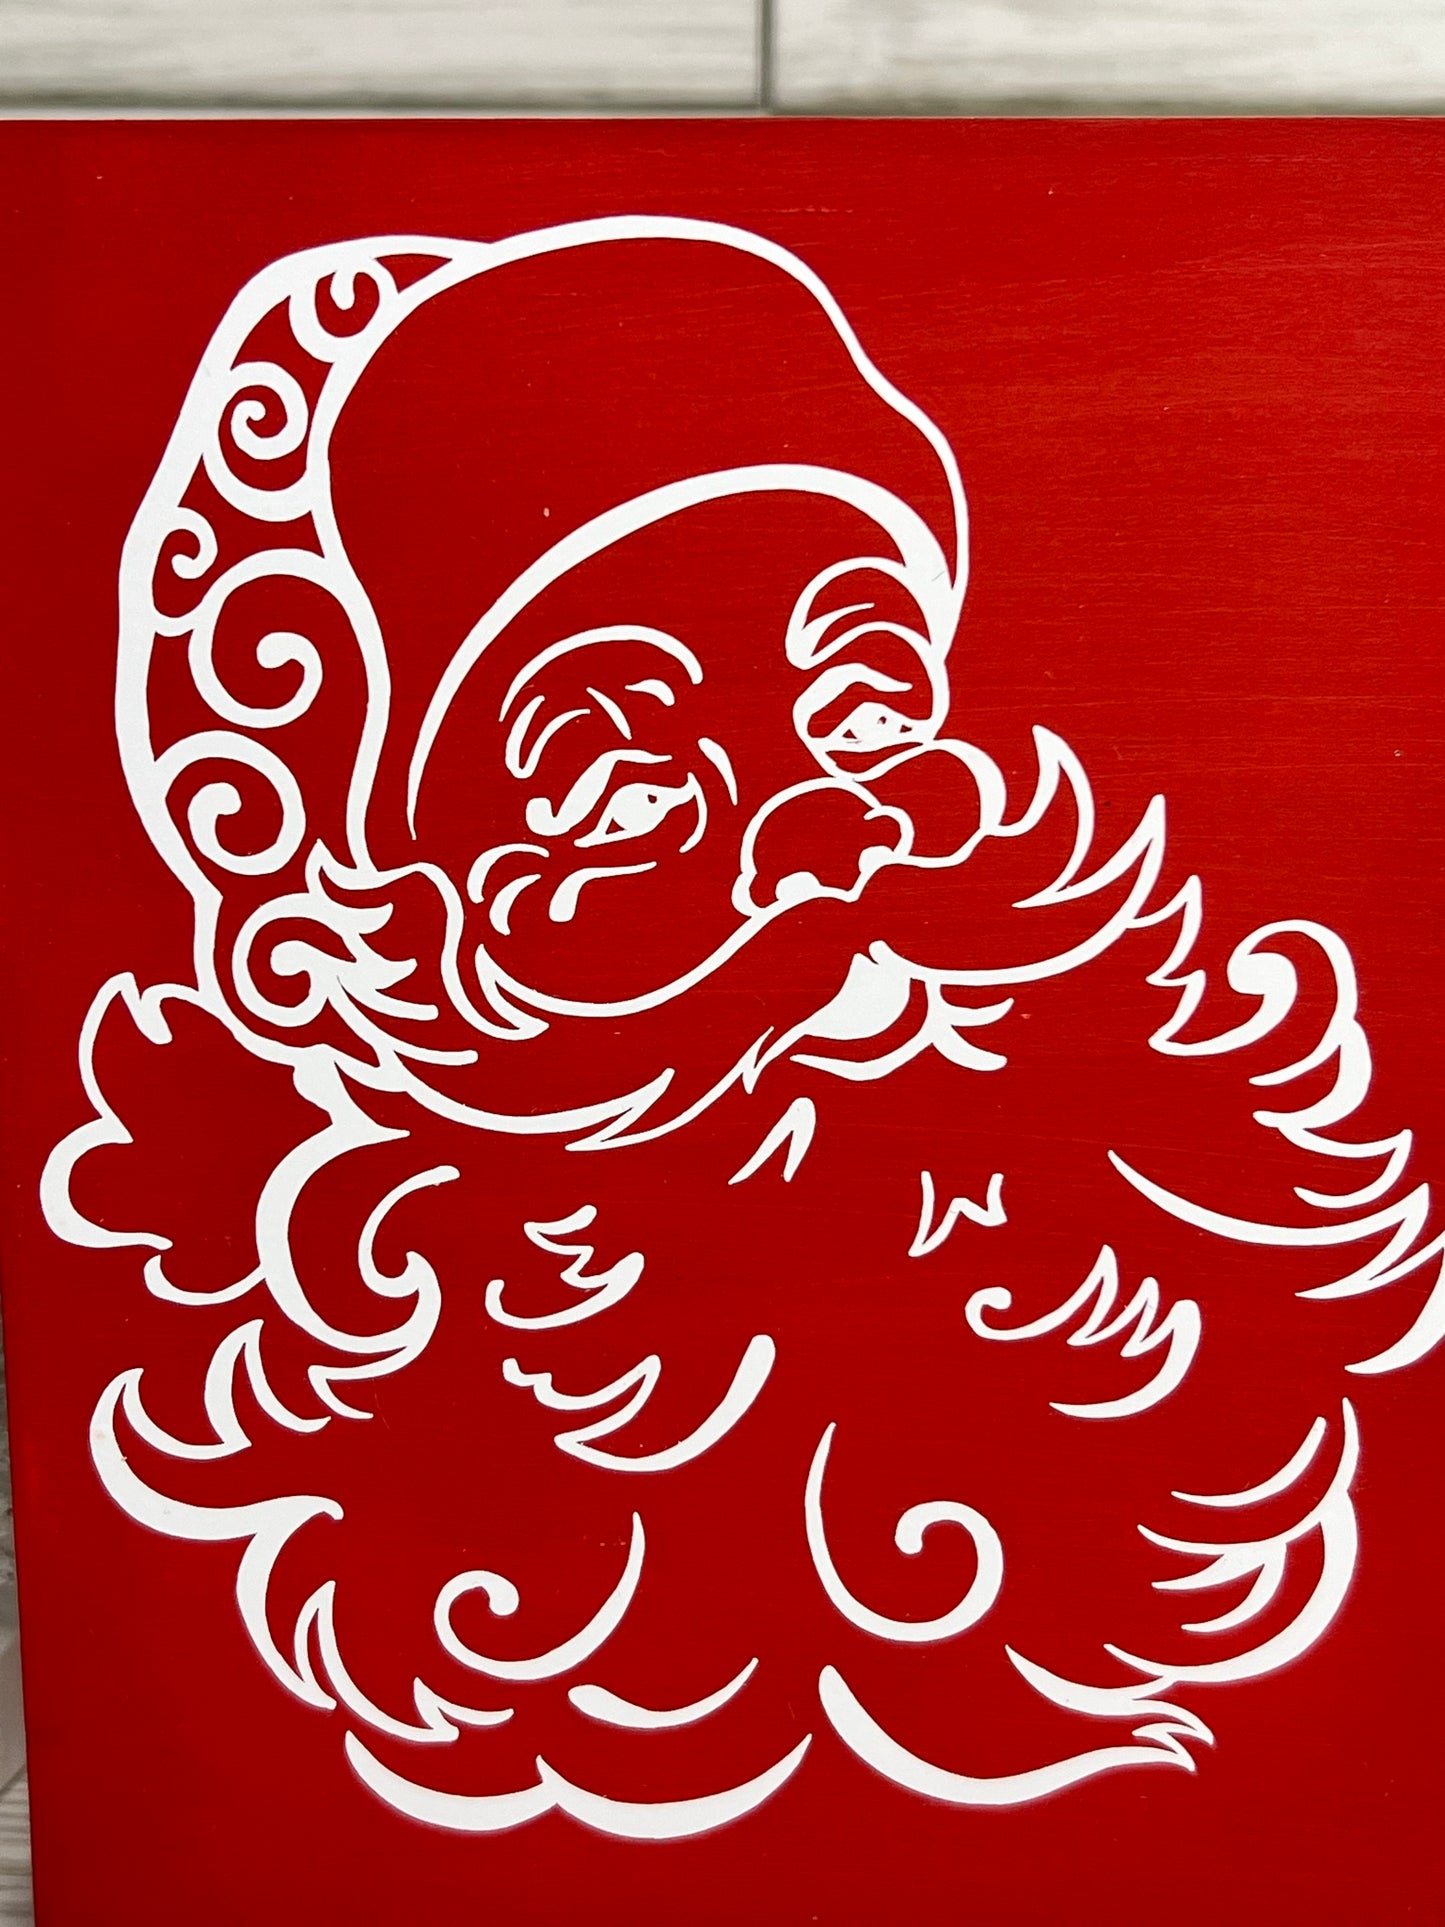 Santa Portrait Sign